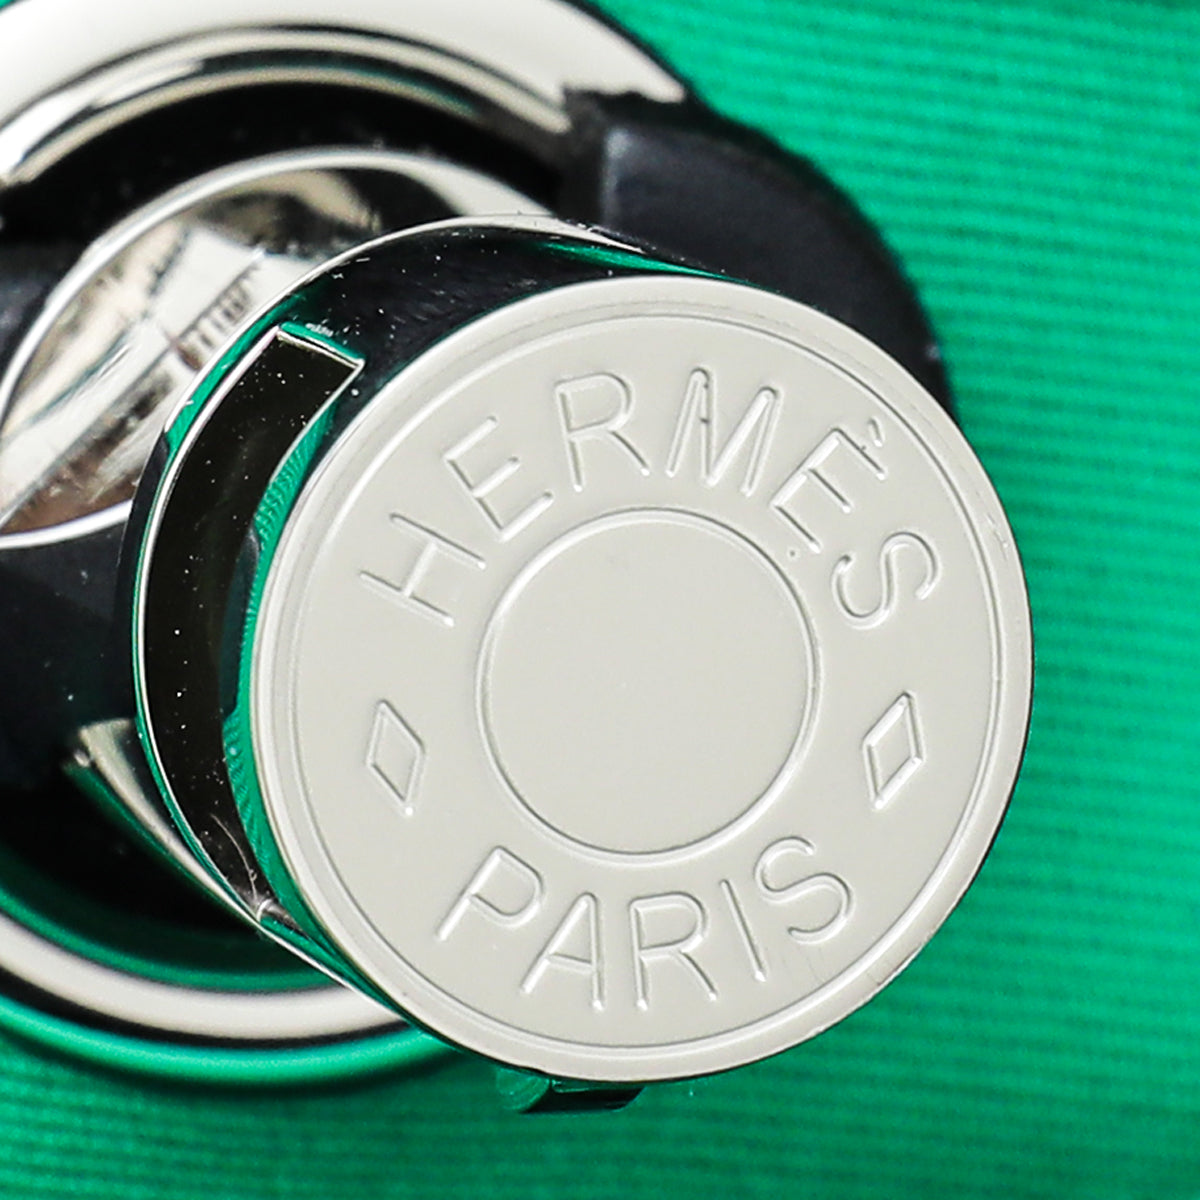 Hermes Tricolor Herbag Retourne PM Bag